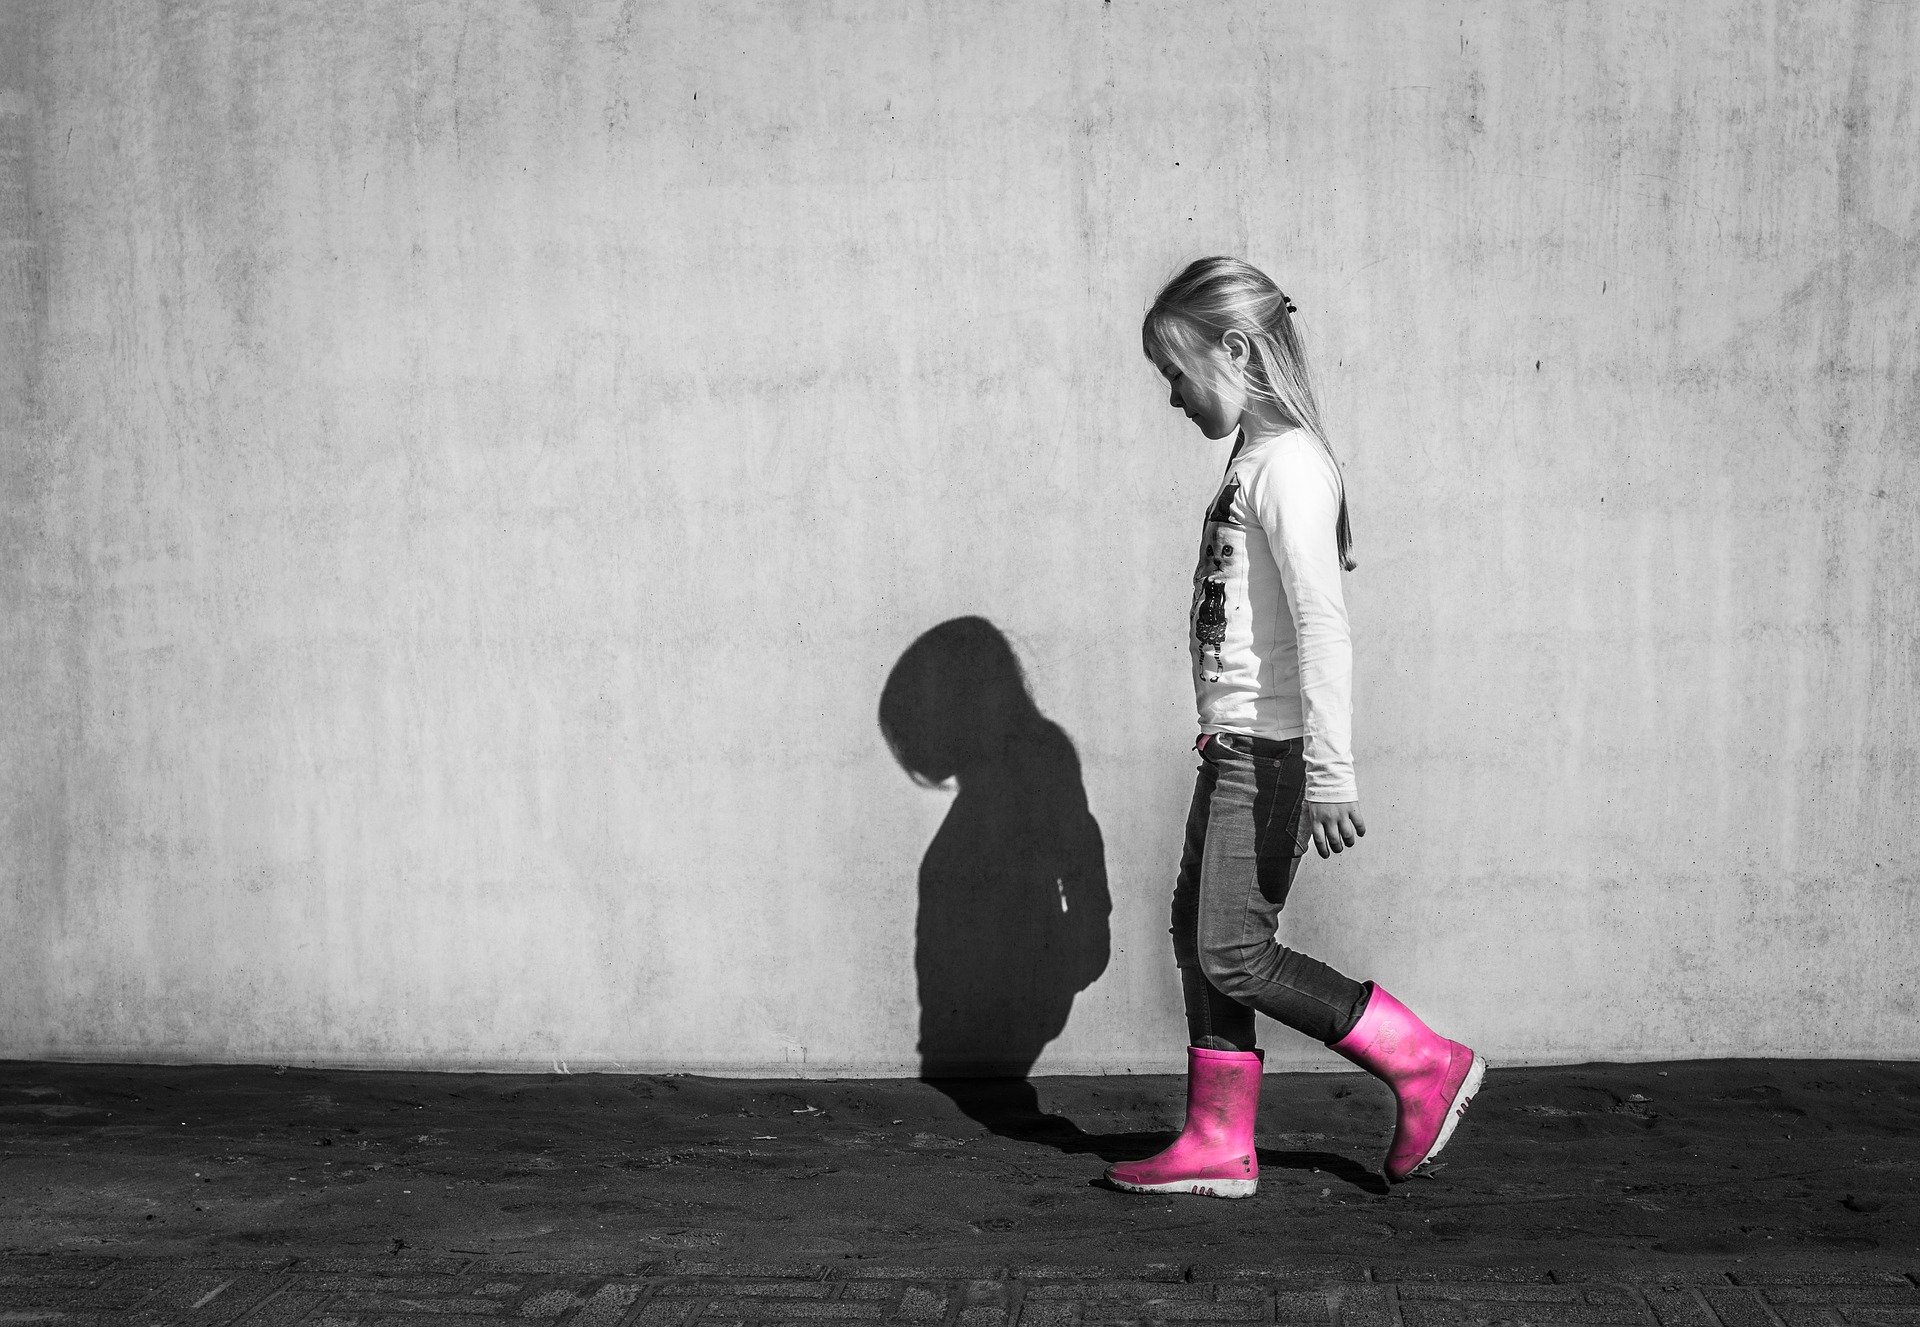 foto in bianco e nero, una bimba cammina a testa bassa accanto ad un muro che riflette la sua ombra, con stivaletti rosa